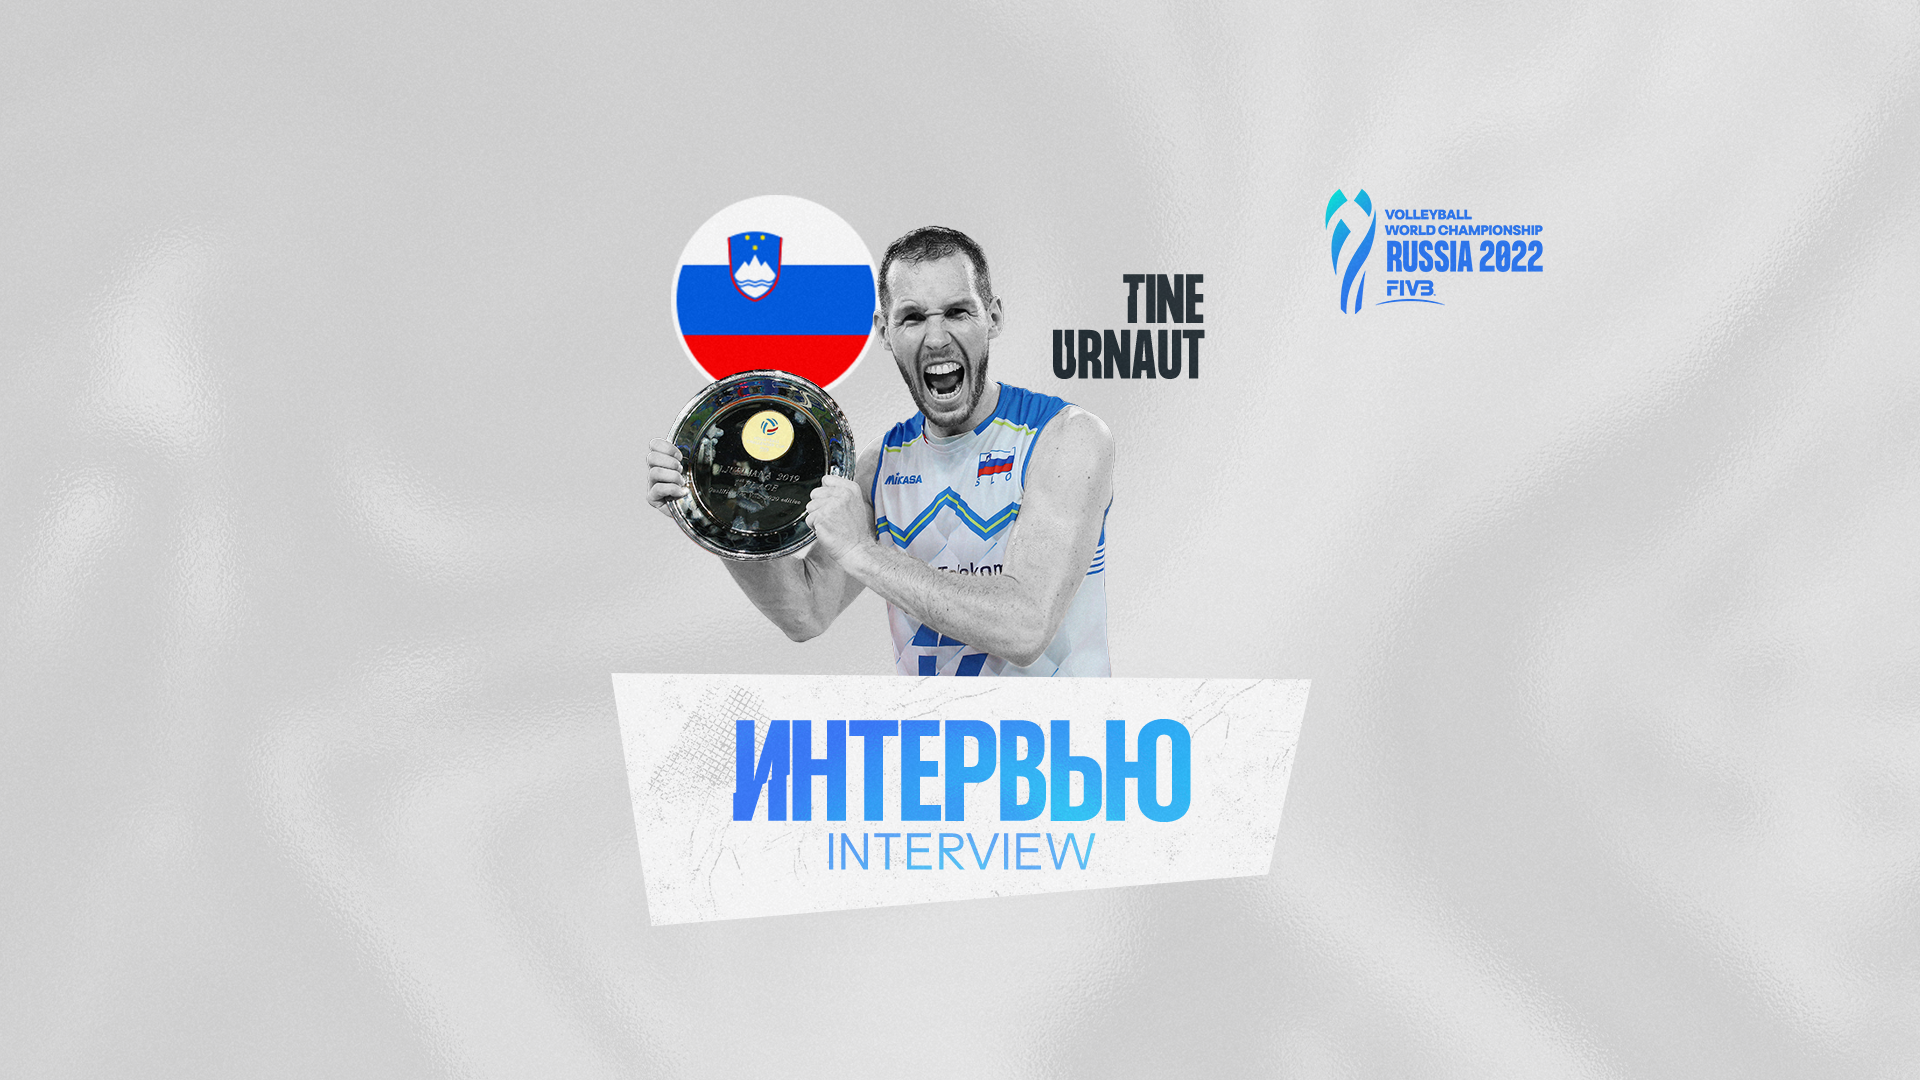 Тине Урнаут: «Чемпионат мира в России будет невероятным турниром, полным энтузиазма»